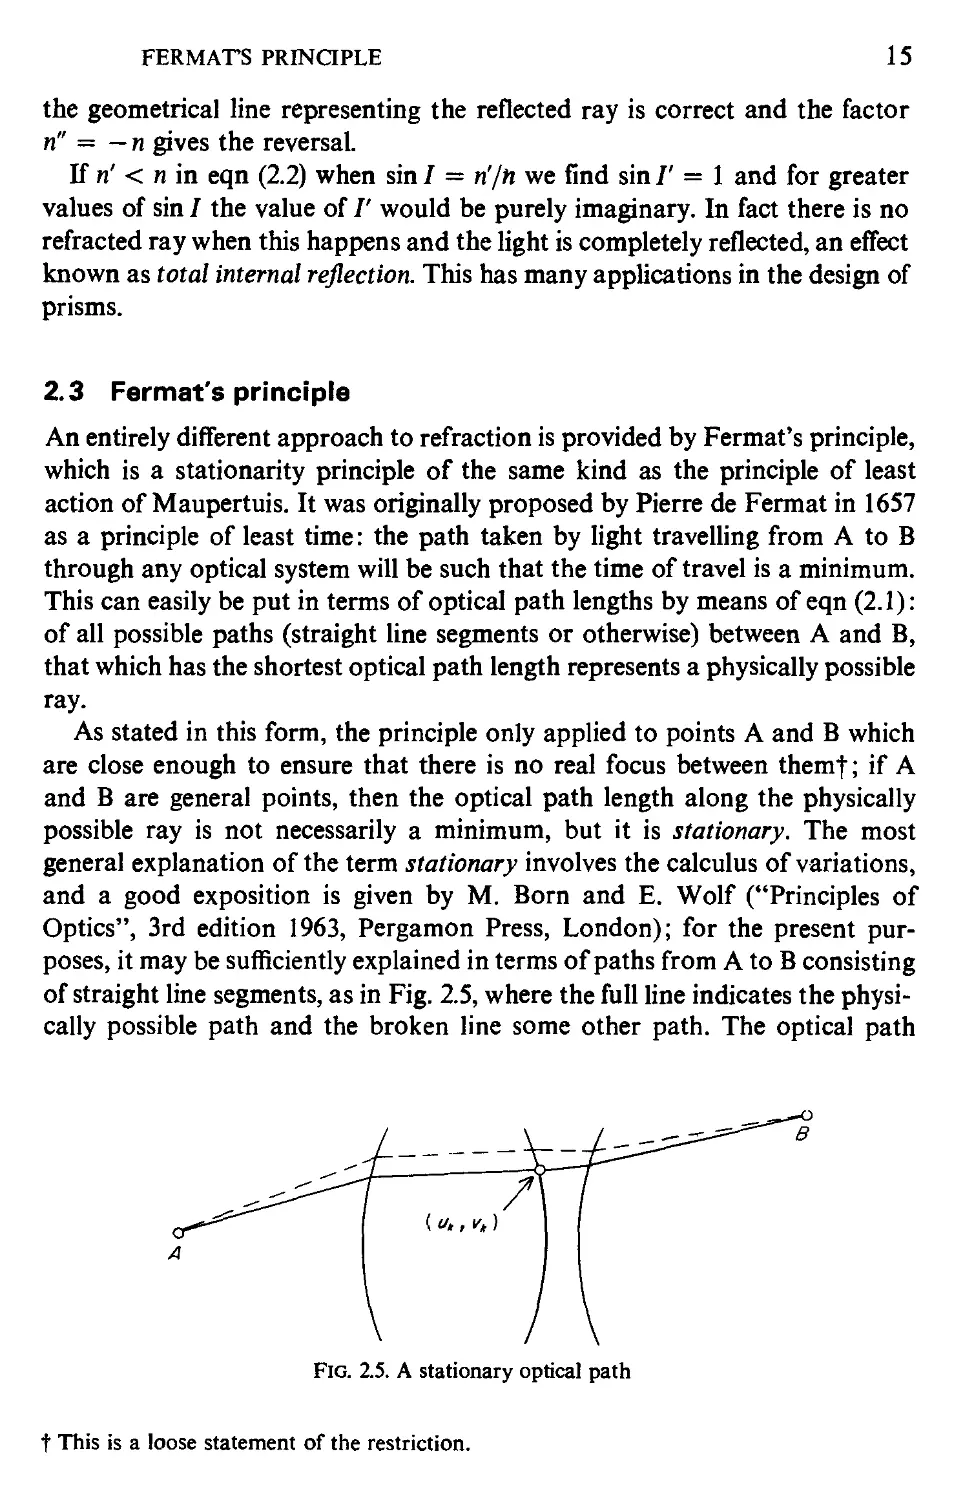 2.3 Fermat's principle